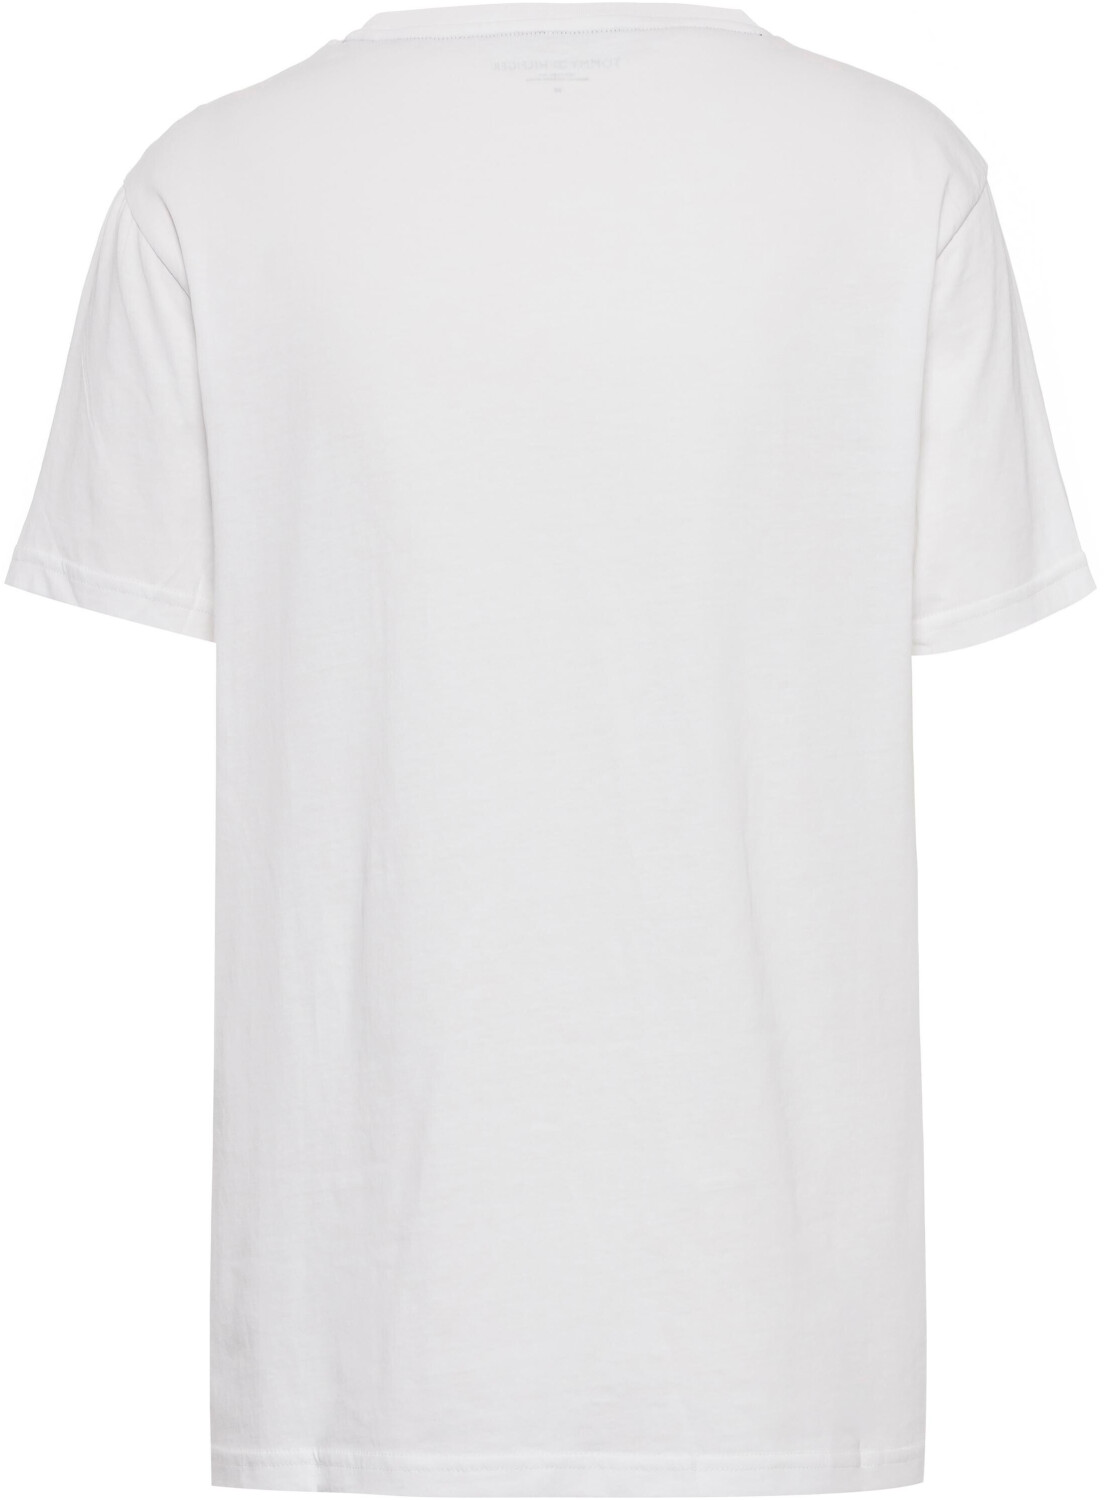 Tommy Hilfiger Logo Embroidery T-Shirt bei € (UM0UM02916) white 27,90 Preisvergleich ab 